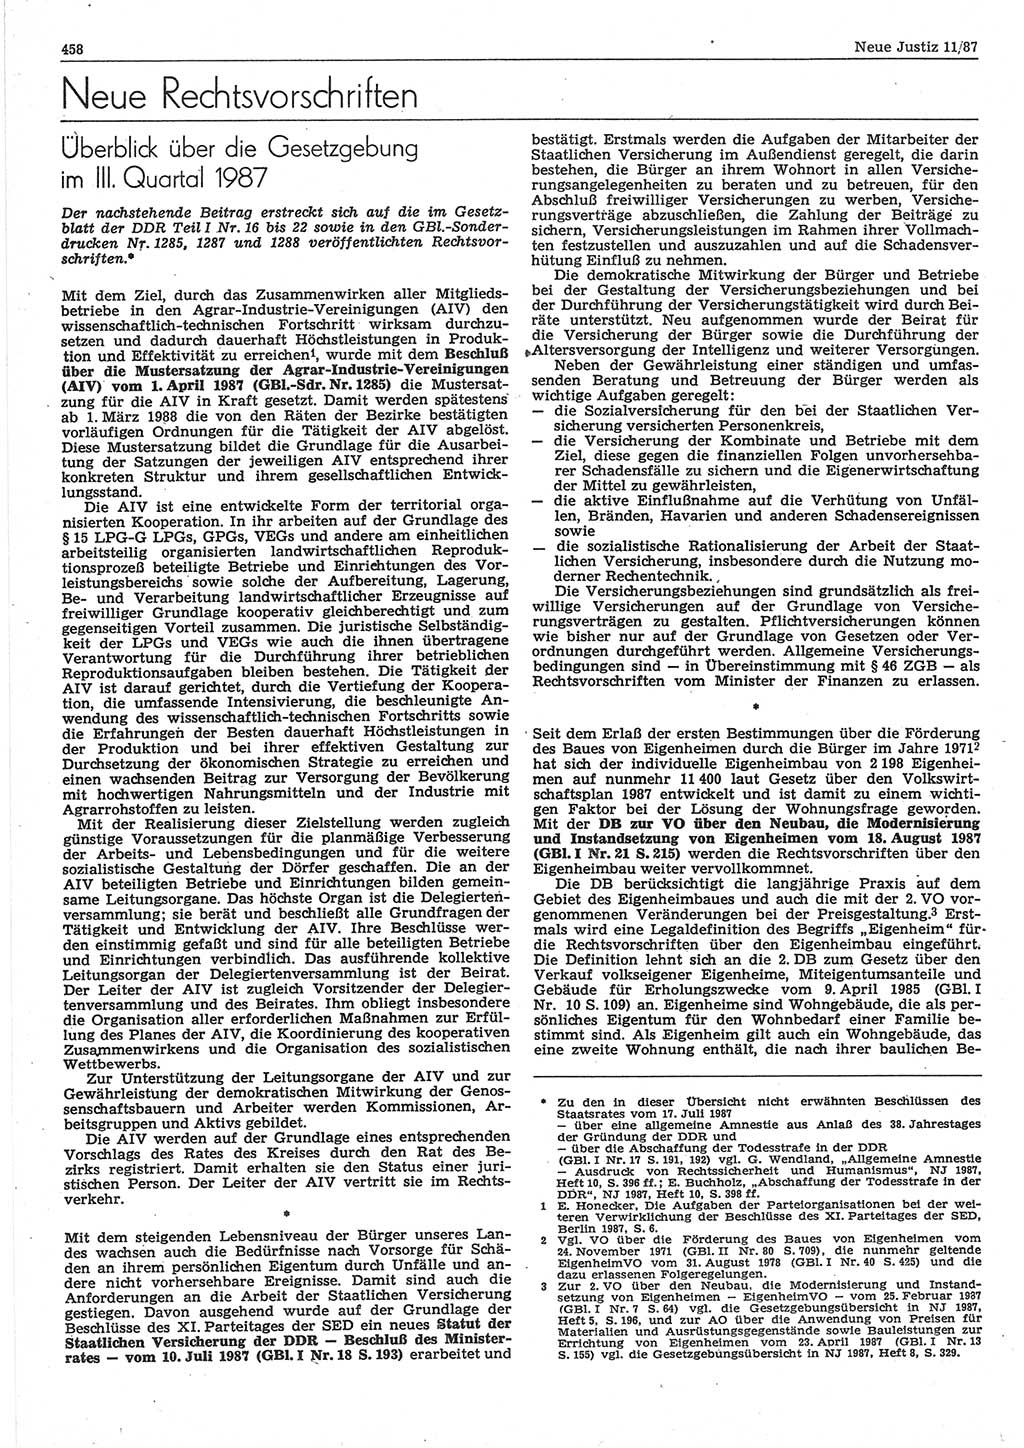 Neue Justiz (NJ), Zeitschrift für sozialistisches Recht und Gesetzlichkeit [Deutsche Demokratische Republik (DDR)], 41. Jahrgang 1987, Seite 458 (NJ DDR 1987, S. 458)